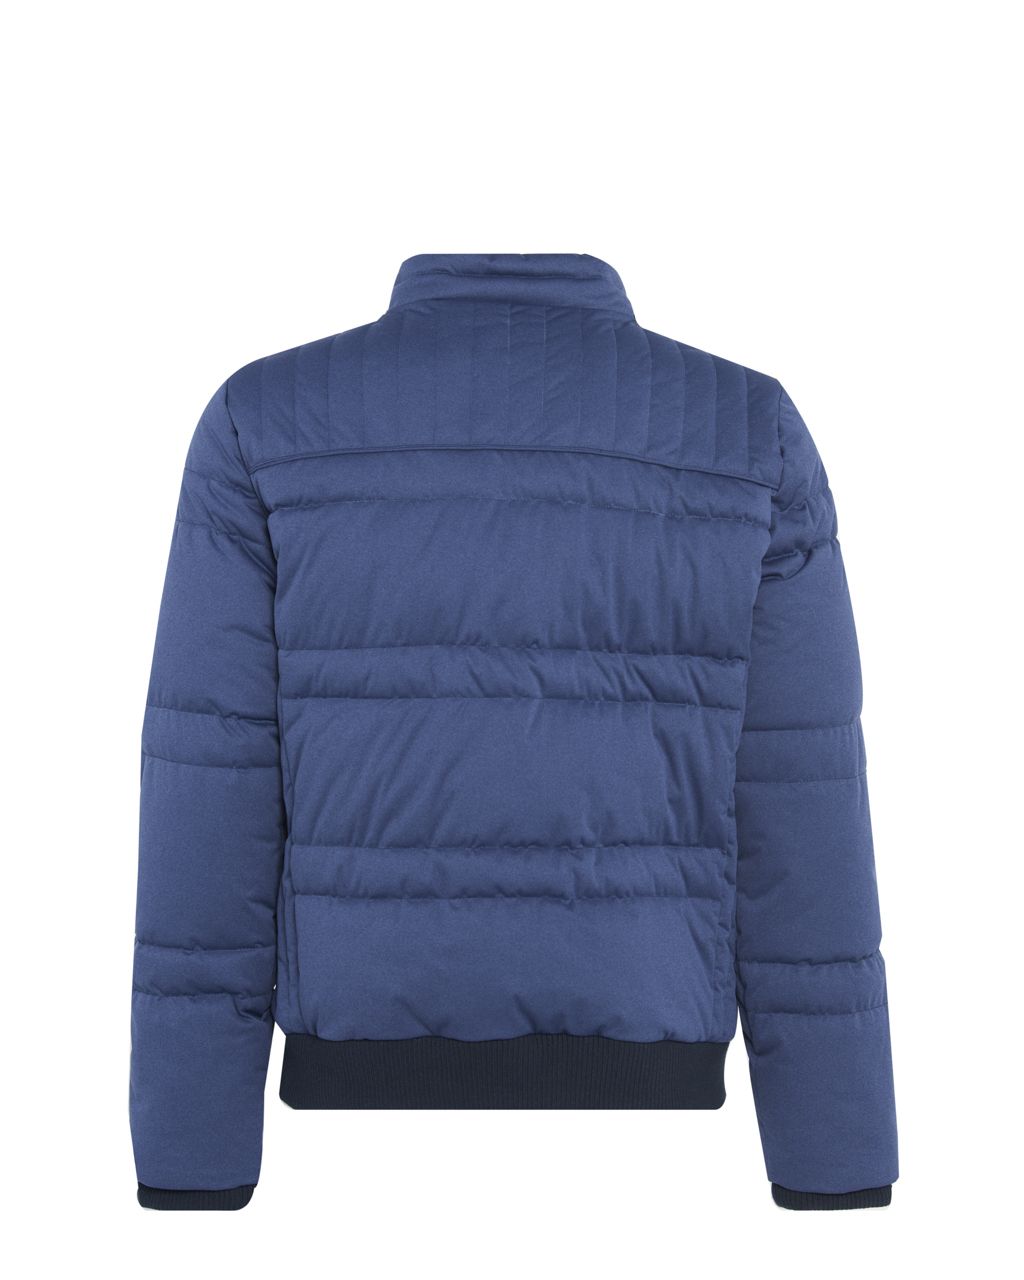 Campbell Classic Winterjas Donkerblauw uni 067740-001-L